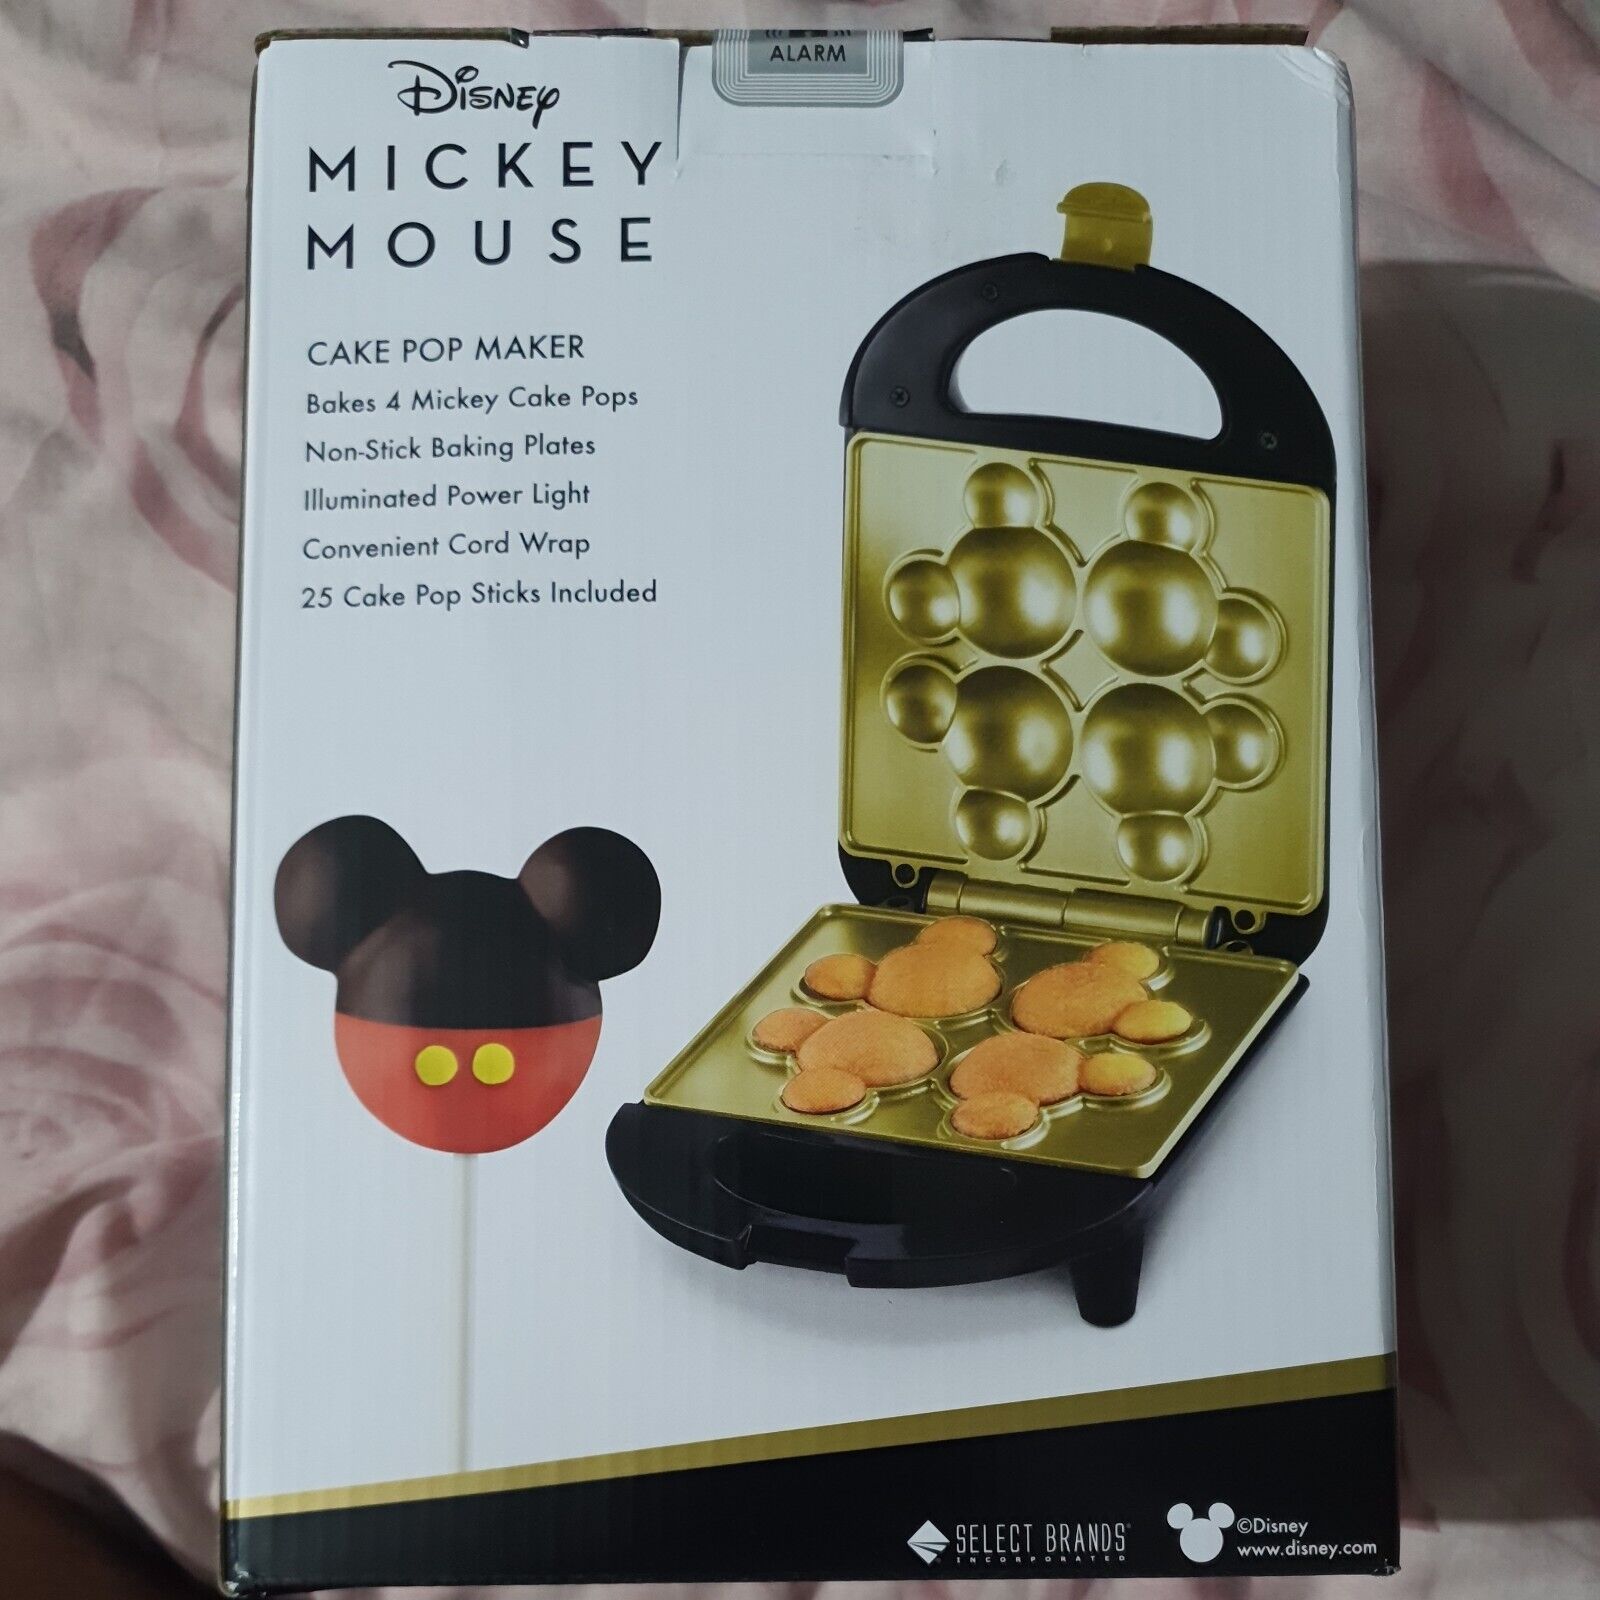 Disney Mickey Mouse Cake Pop Maker Forma de Mickey Head - Totalmente Nuevo y Sellado